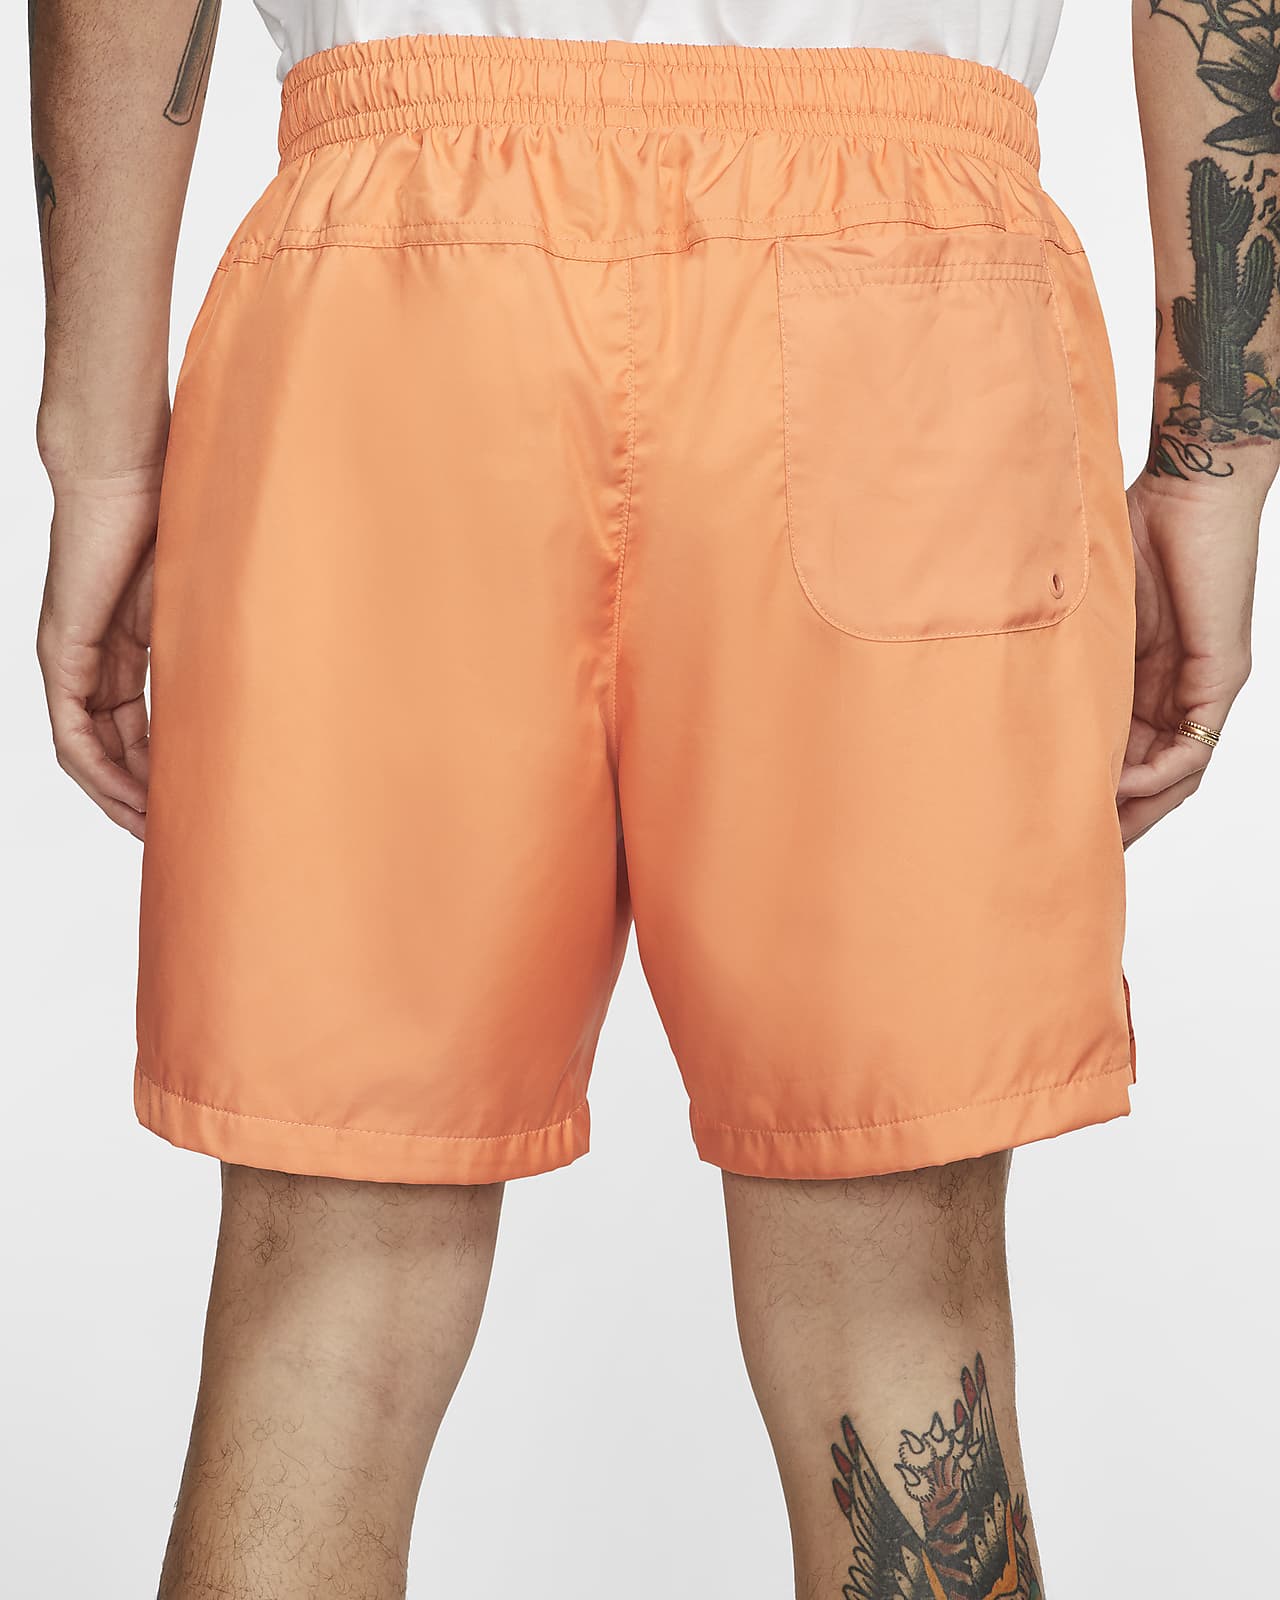 nike orange trance shorts